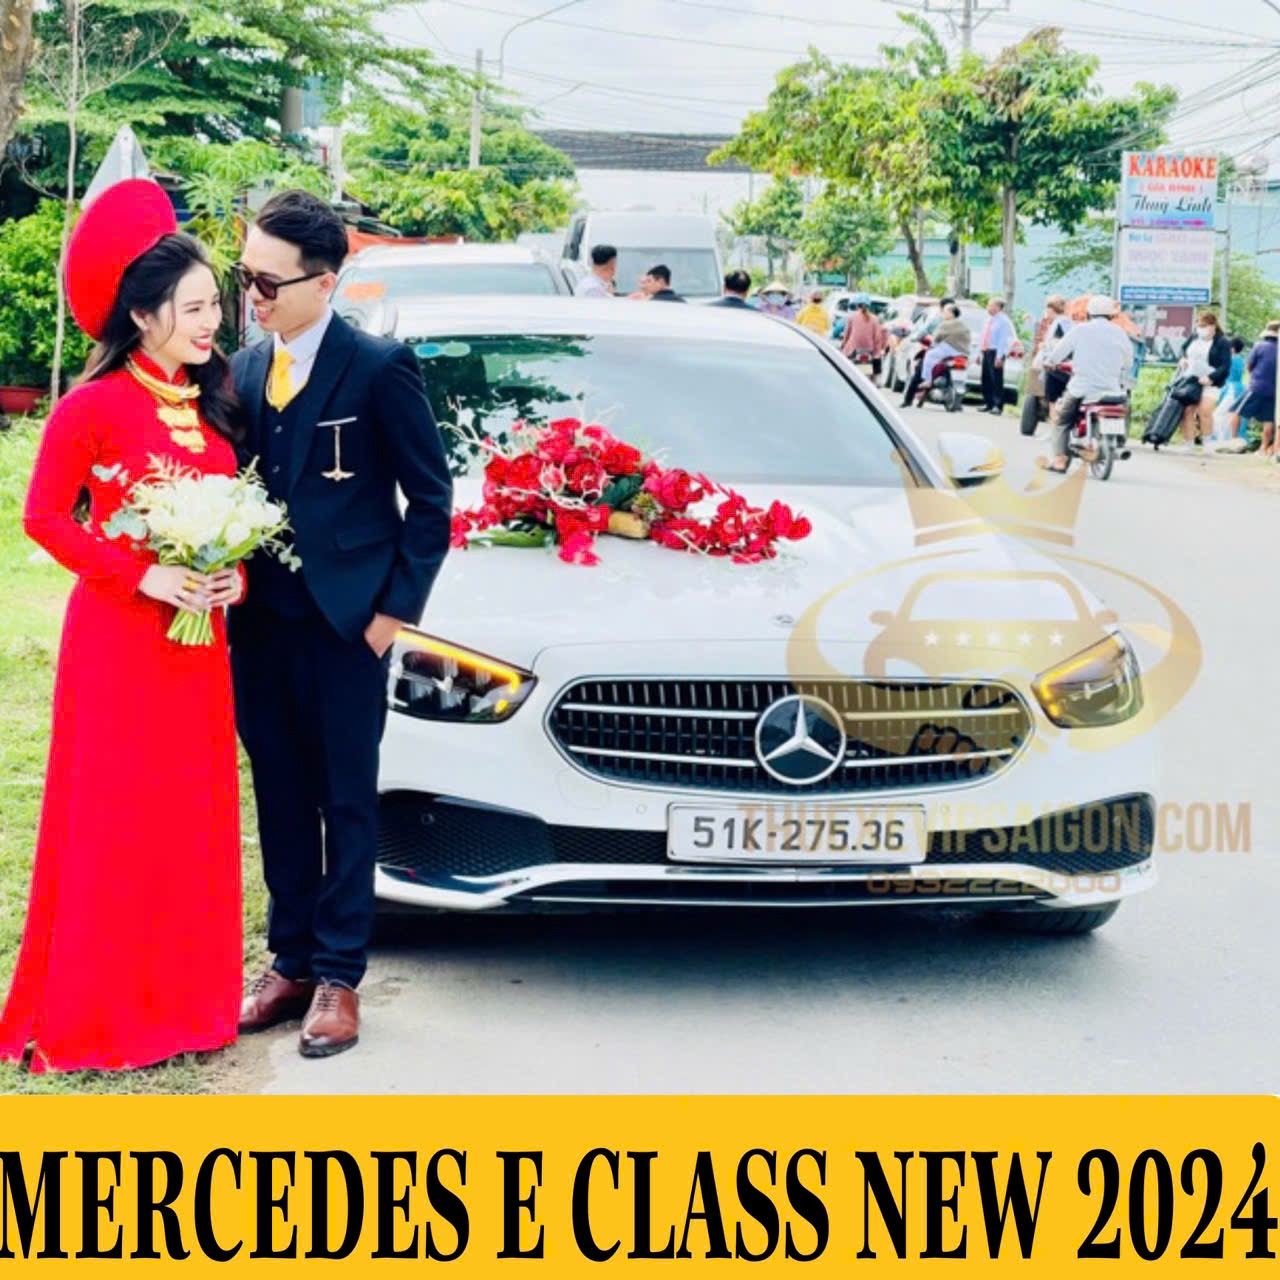 Tâp đoàn Bảo Dương cho thuê xe cưới Mercedes ngày 10/1/2024